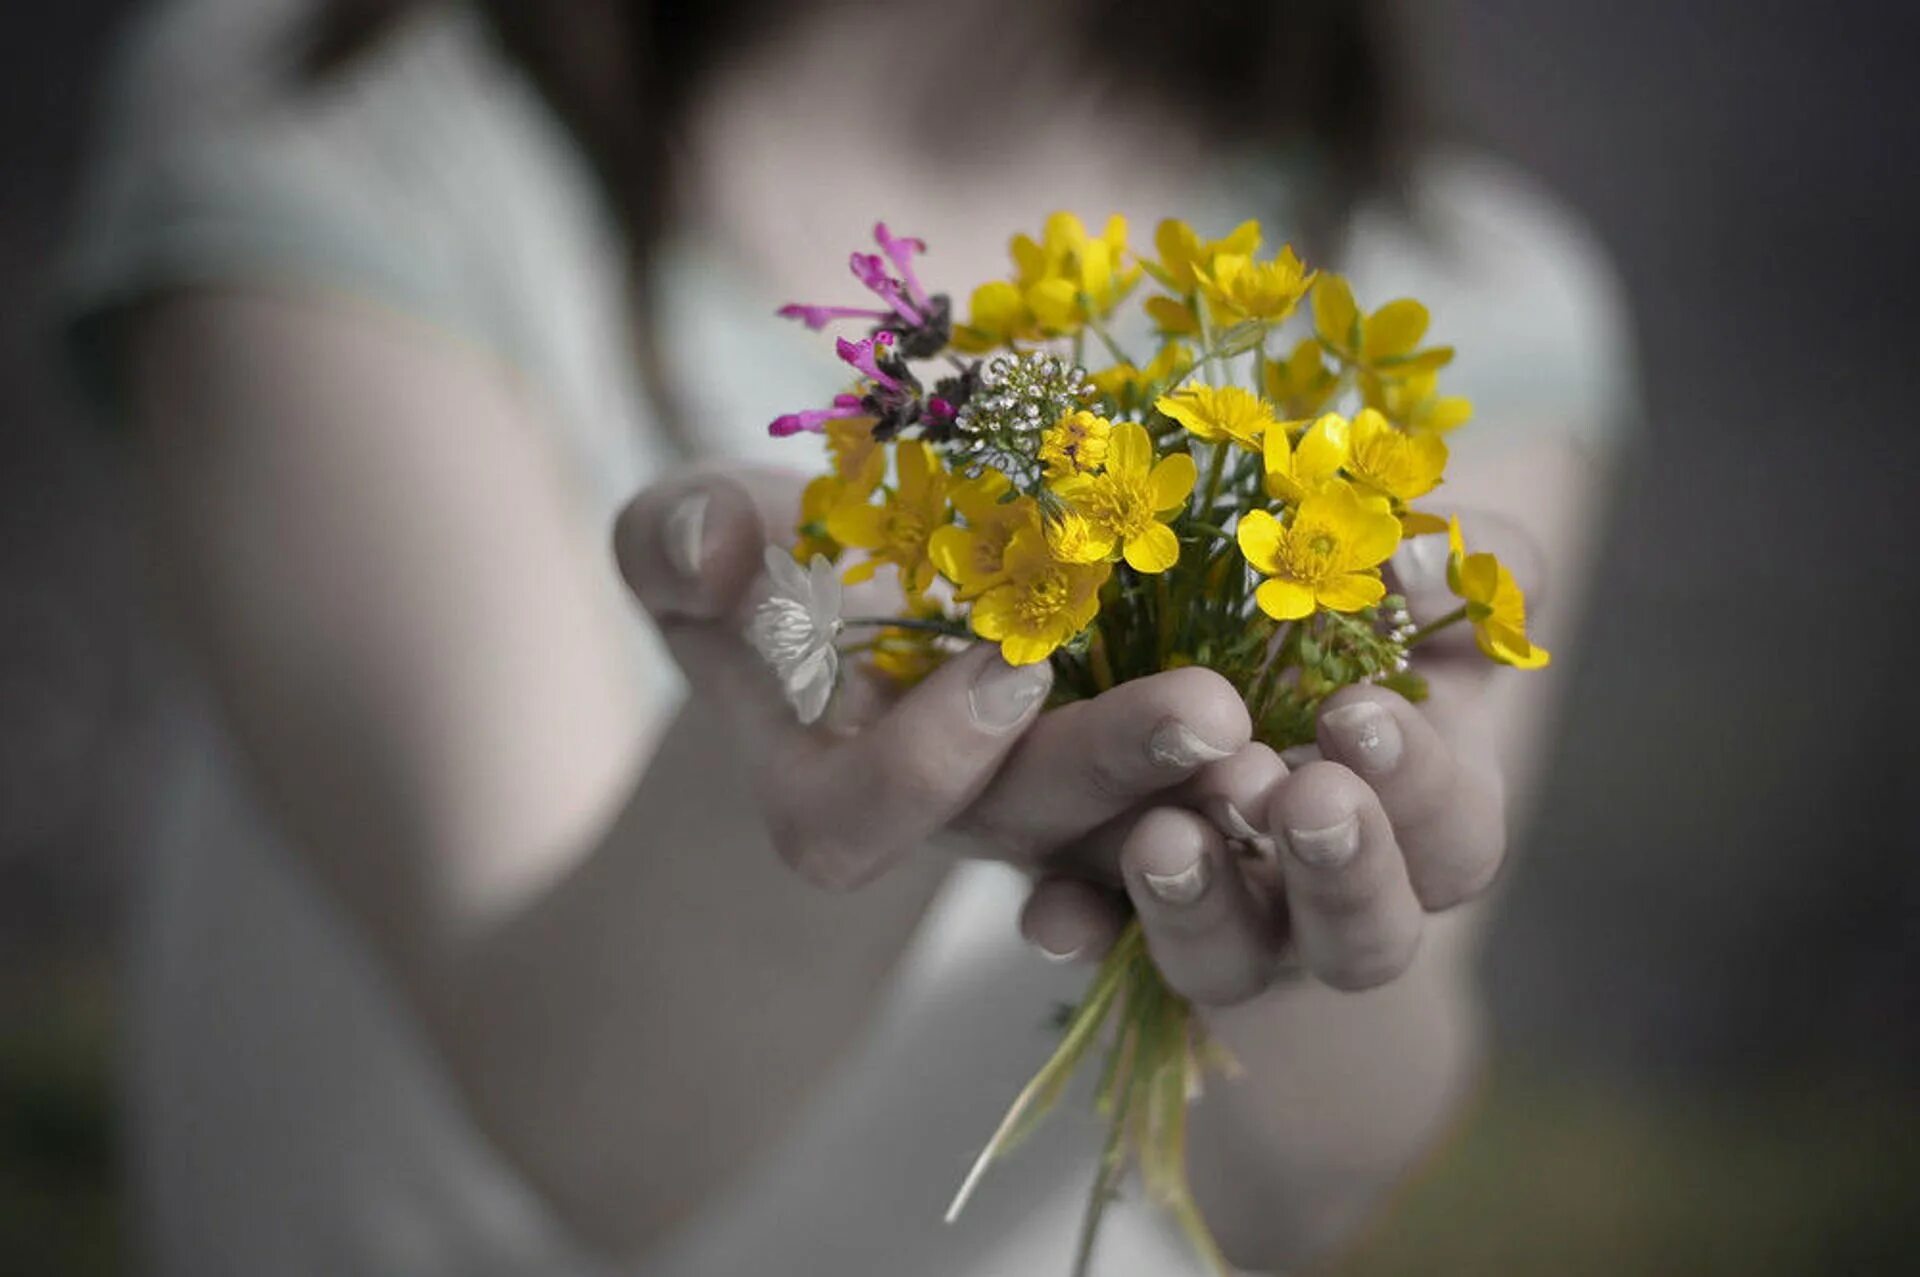 Замечательный вечно. Цветы в ладонях. Цветы радости. Цветы радости жизни. Счастье в руках.